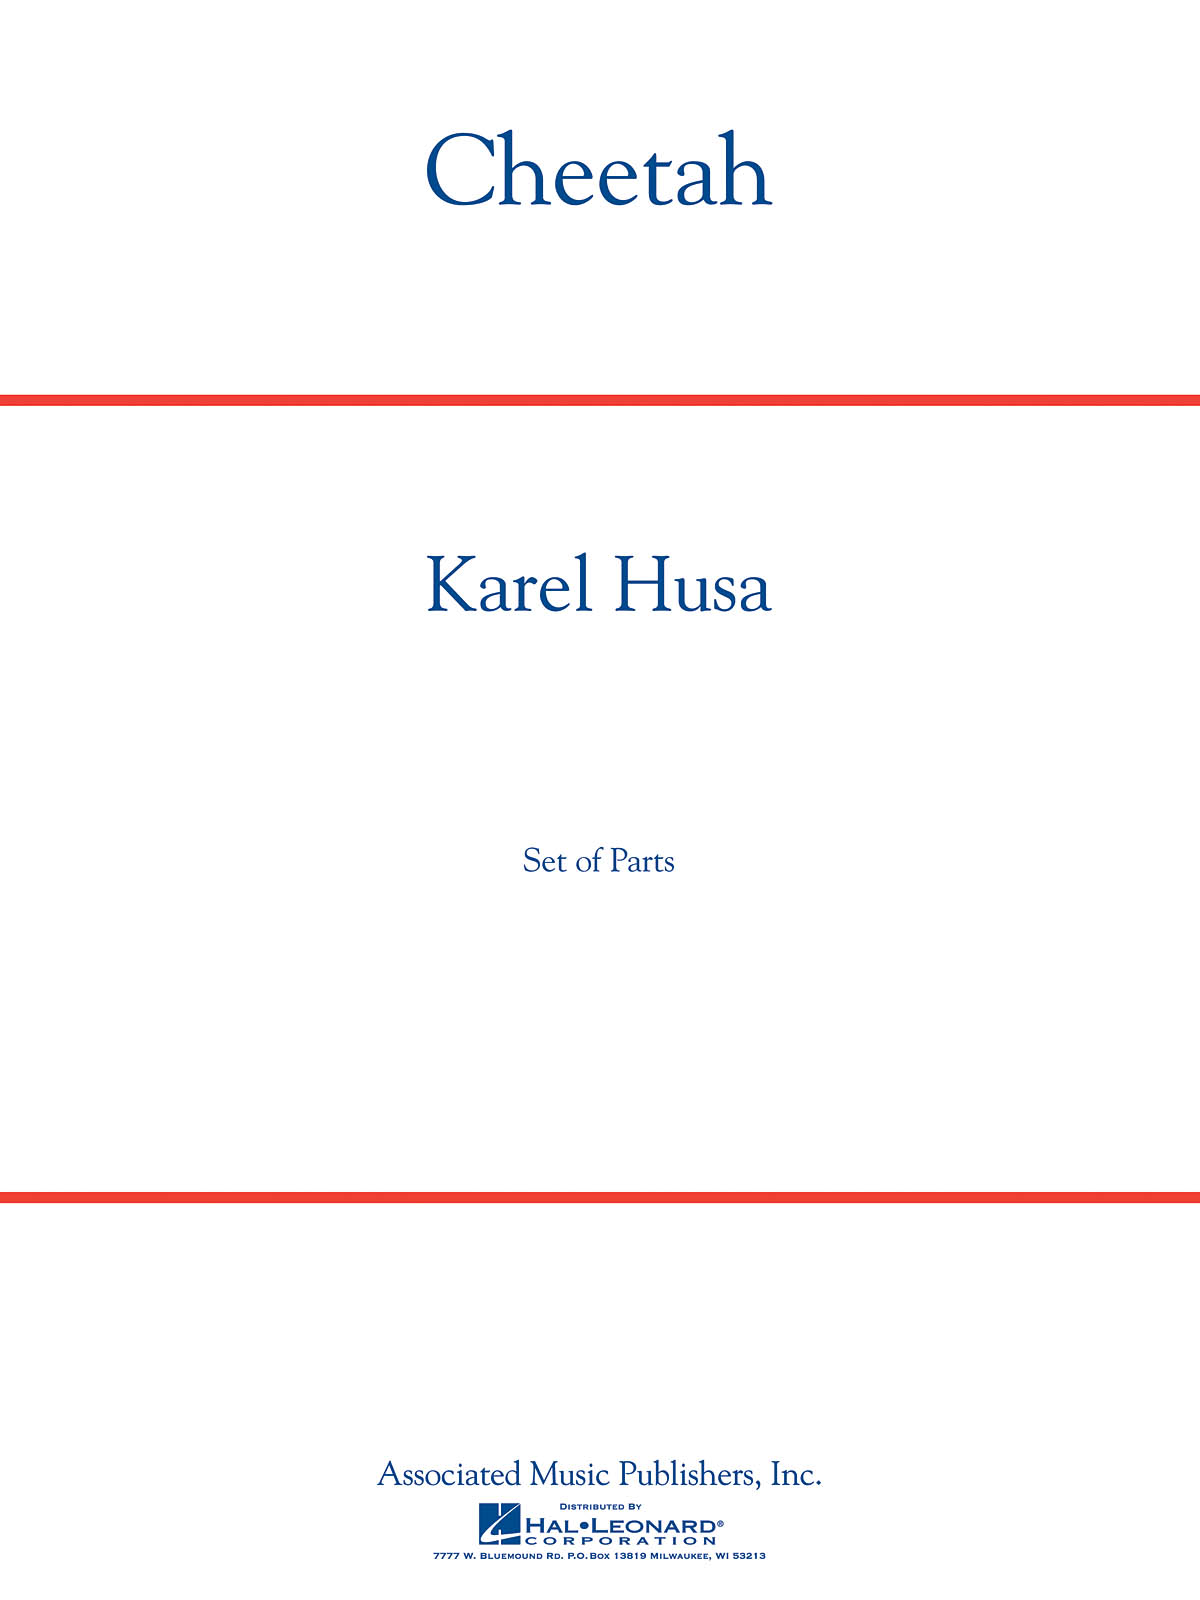 Karel Husa: Cheetah Score And Parts